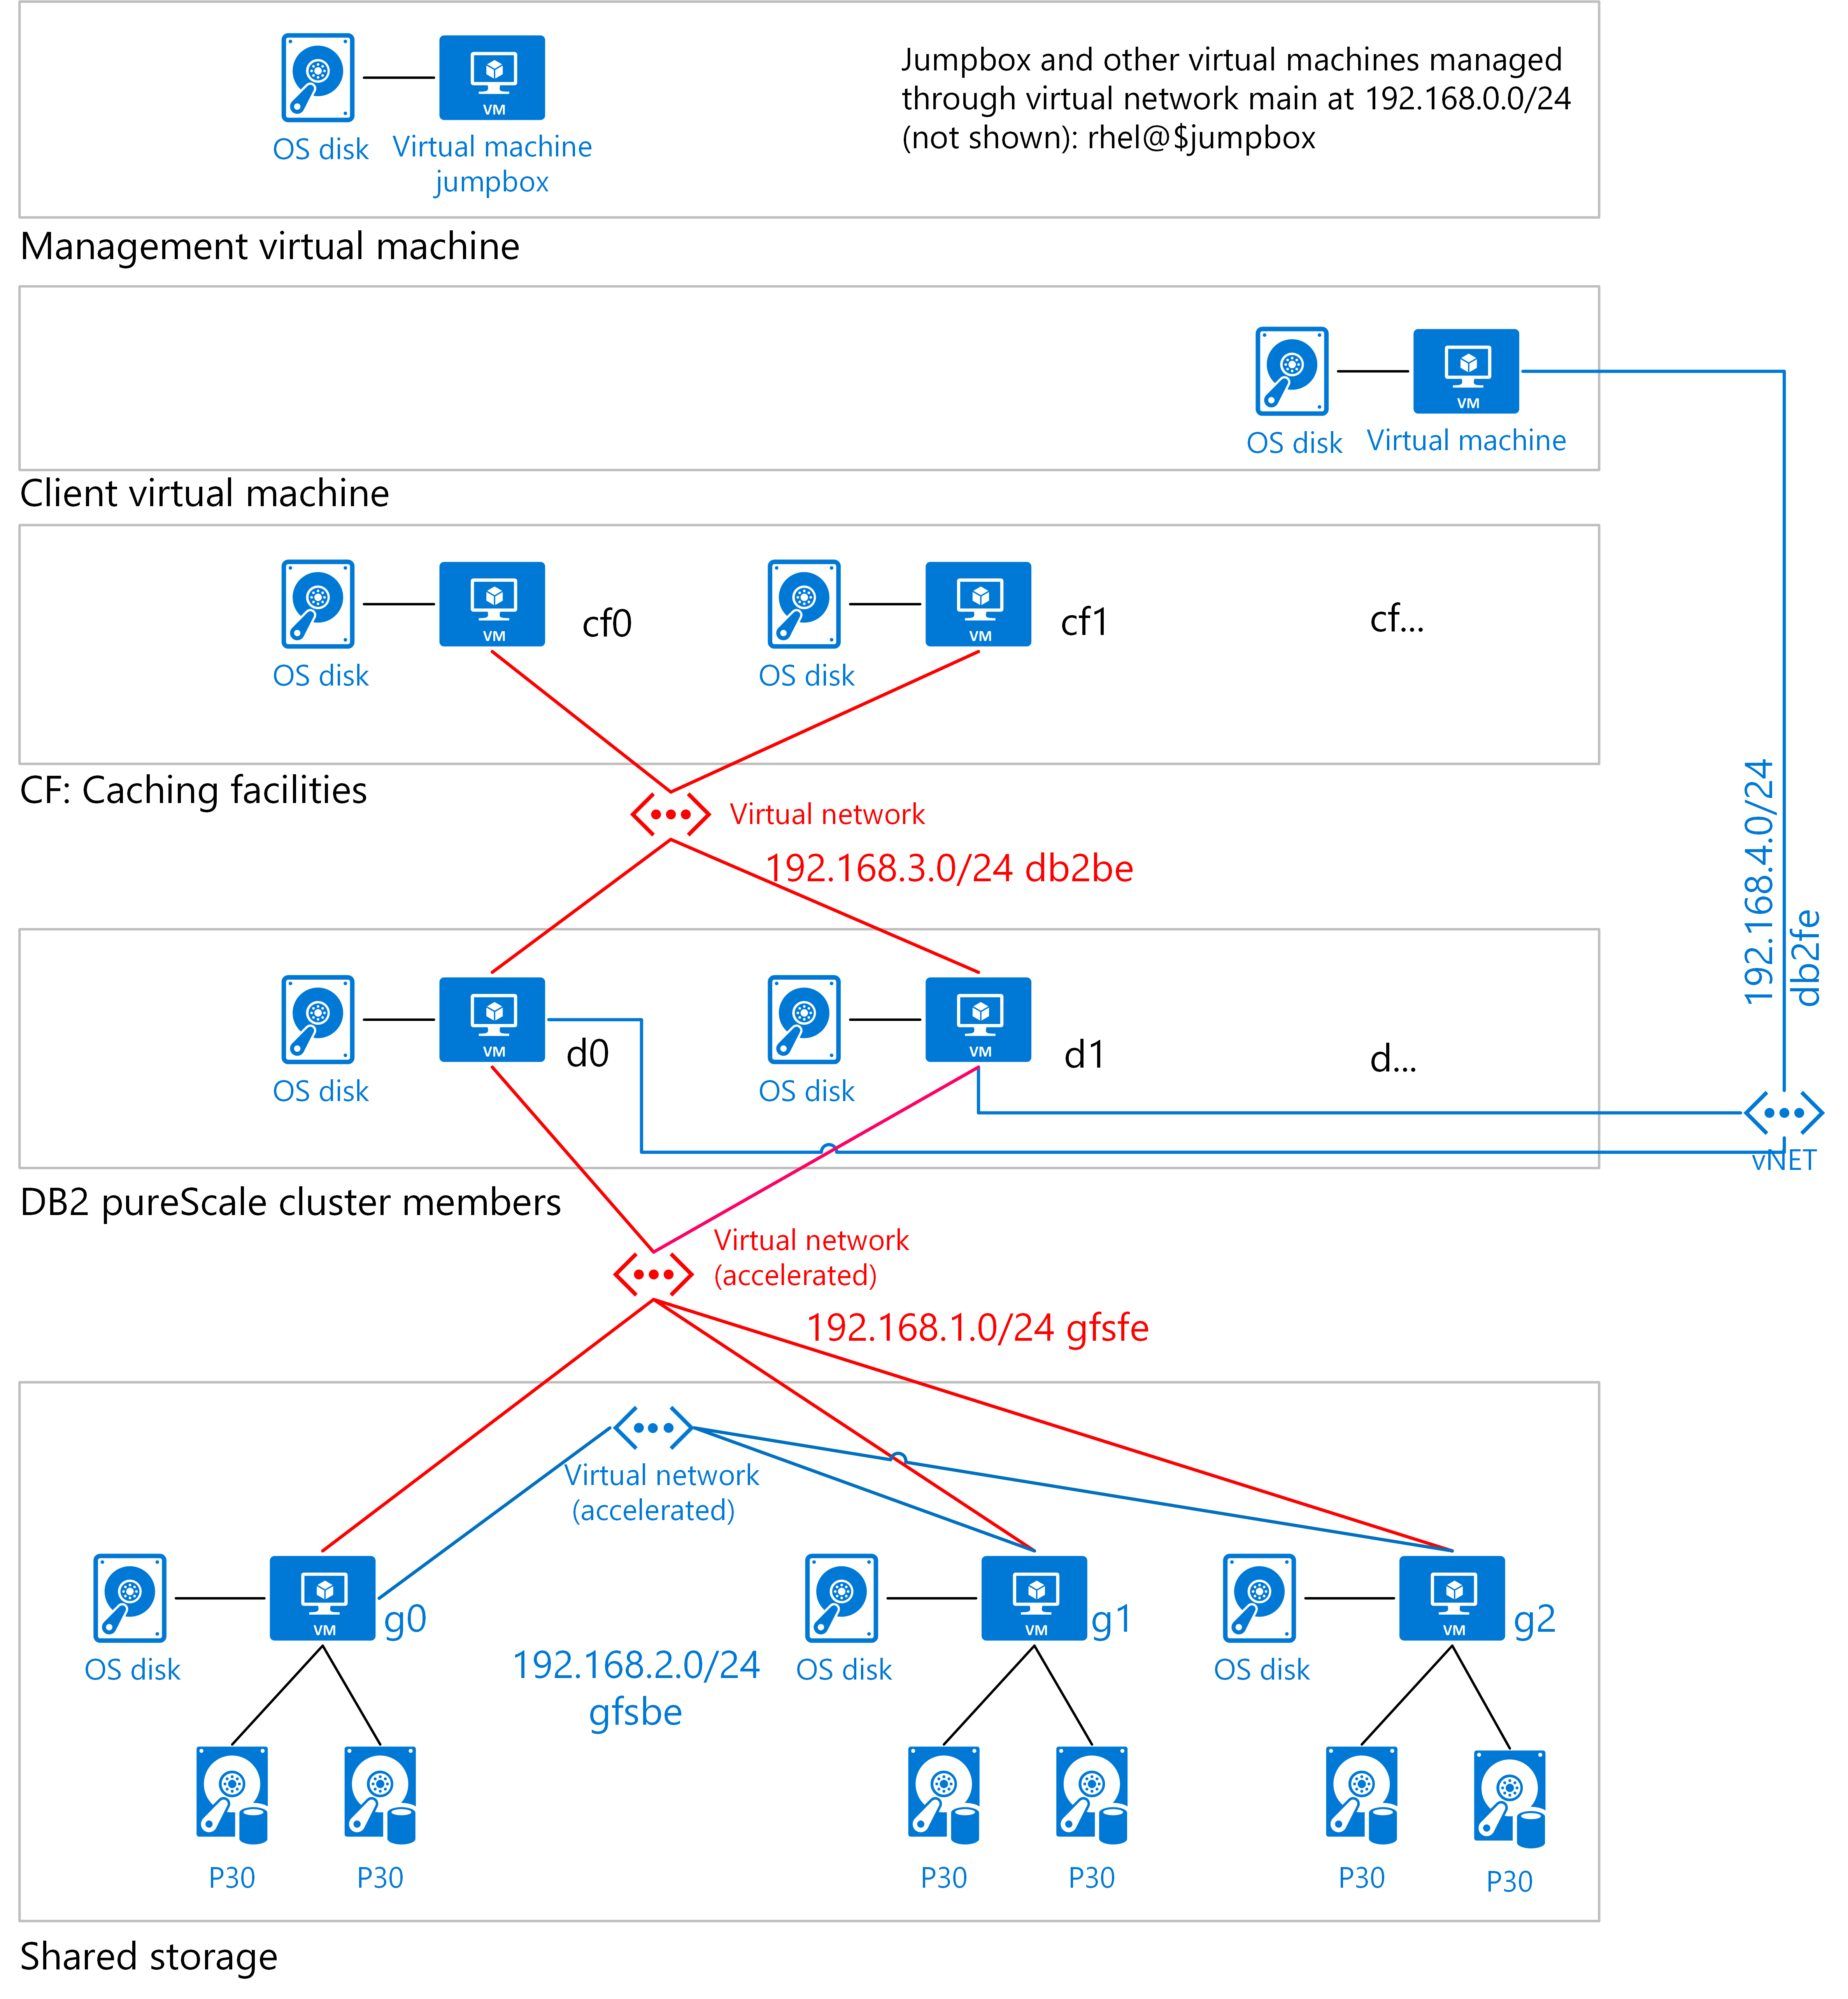 DB2 pureScale na virtuálních počítačích Azure zobrazující úložiště a sítě